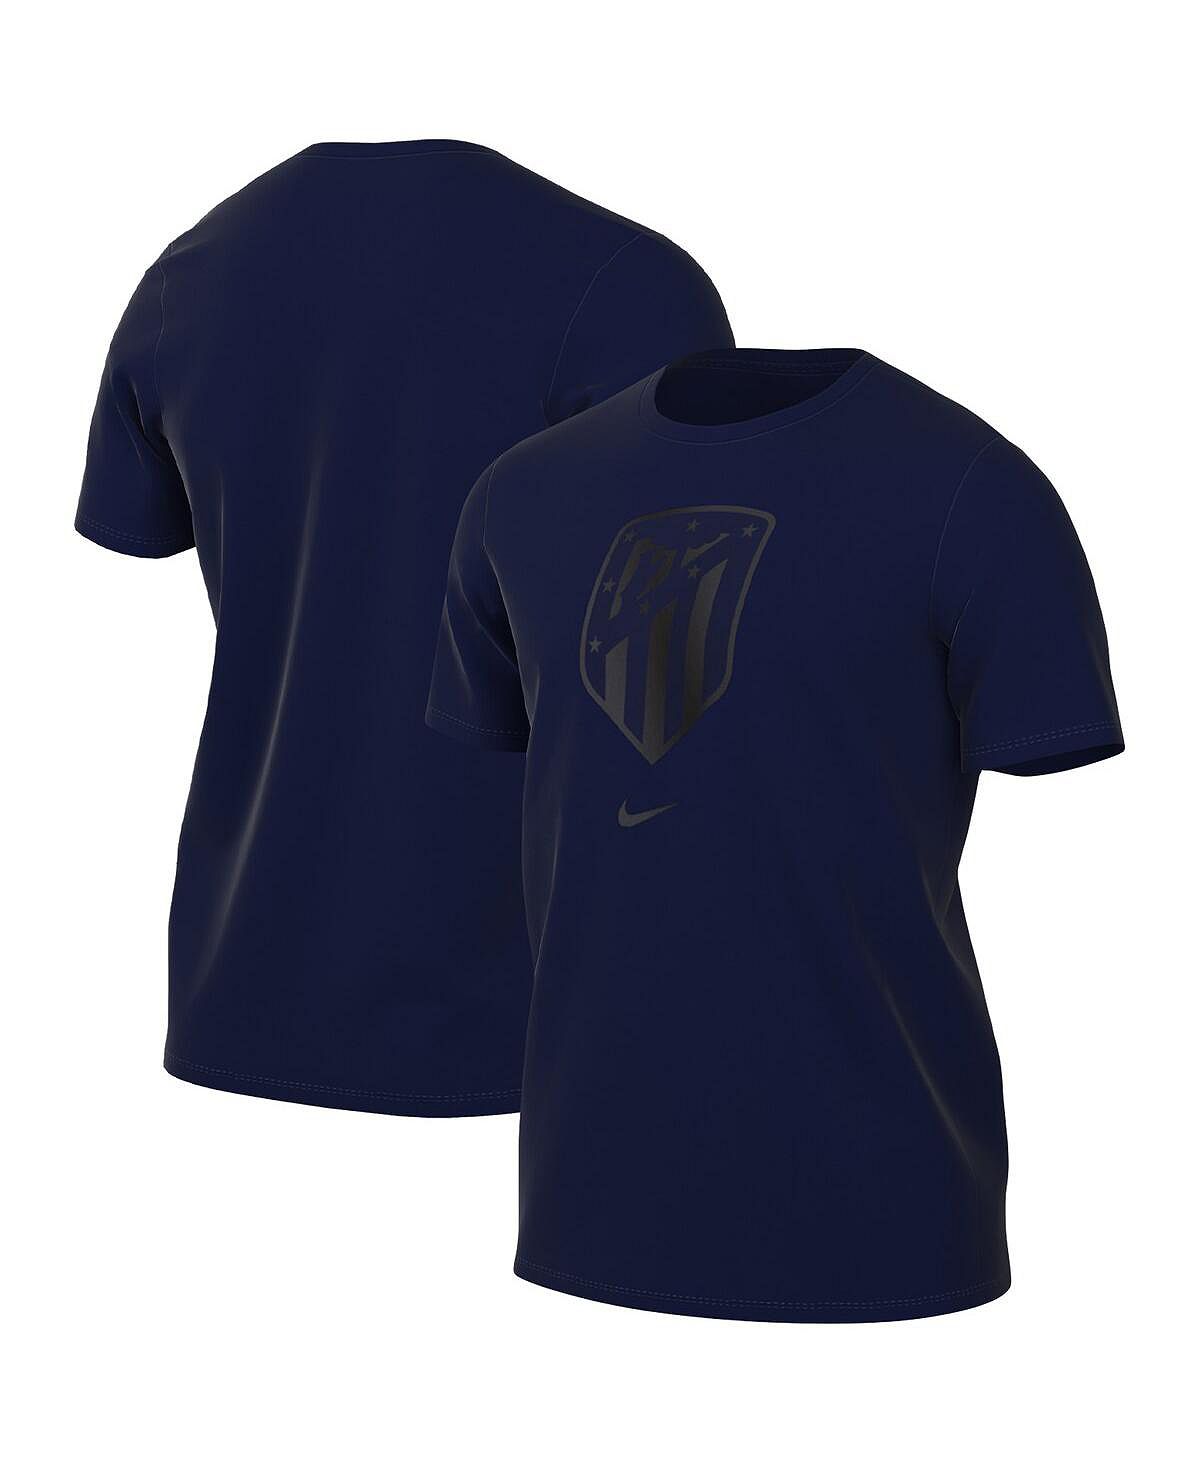 цена Мужская темно-синяя футболка с гербом Atletico de Madrid Nike